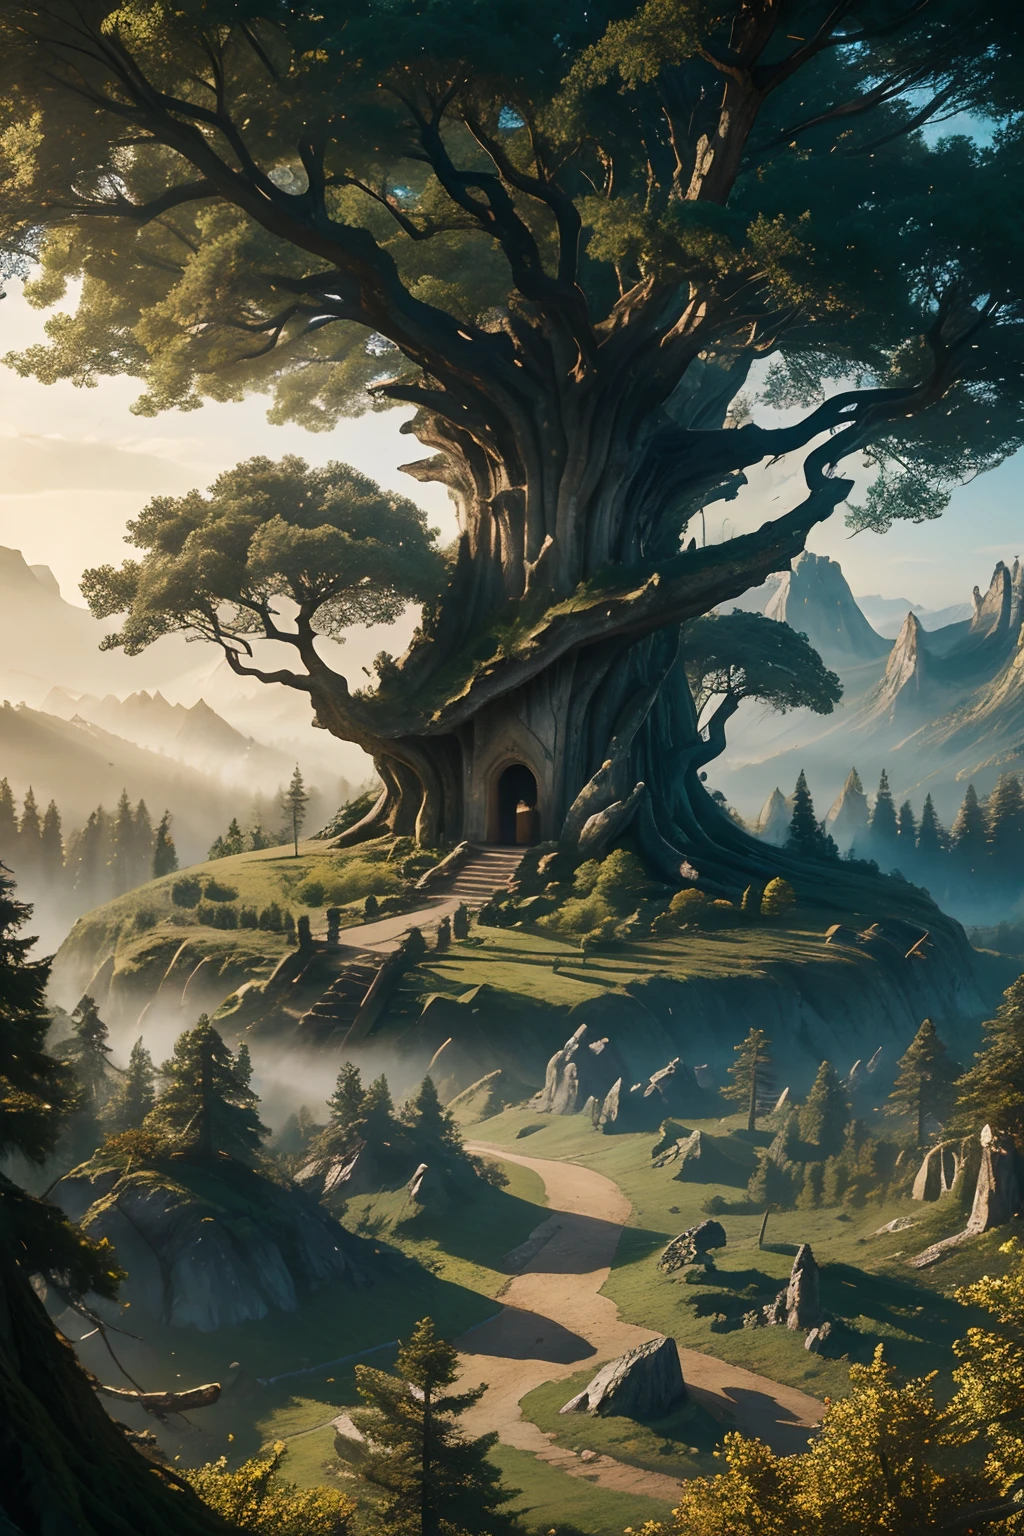 Obra de arte, melhor qualidade, (8K), floresta mística, cidade antiga construída dentro de uma árvore gigante, colinas irregulares e rochas no fundo,